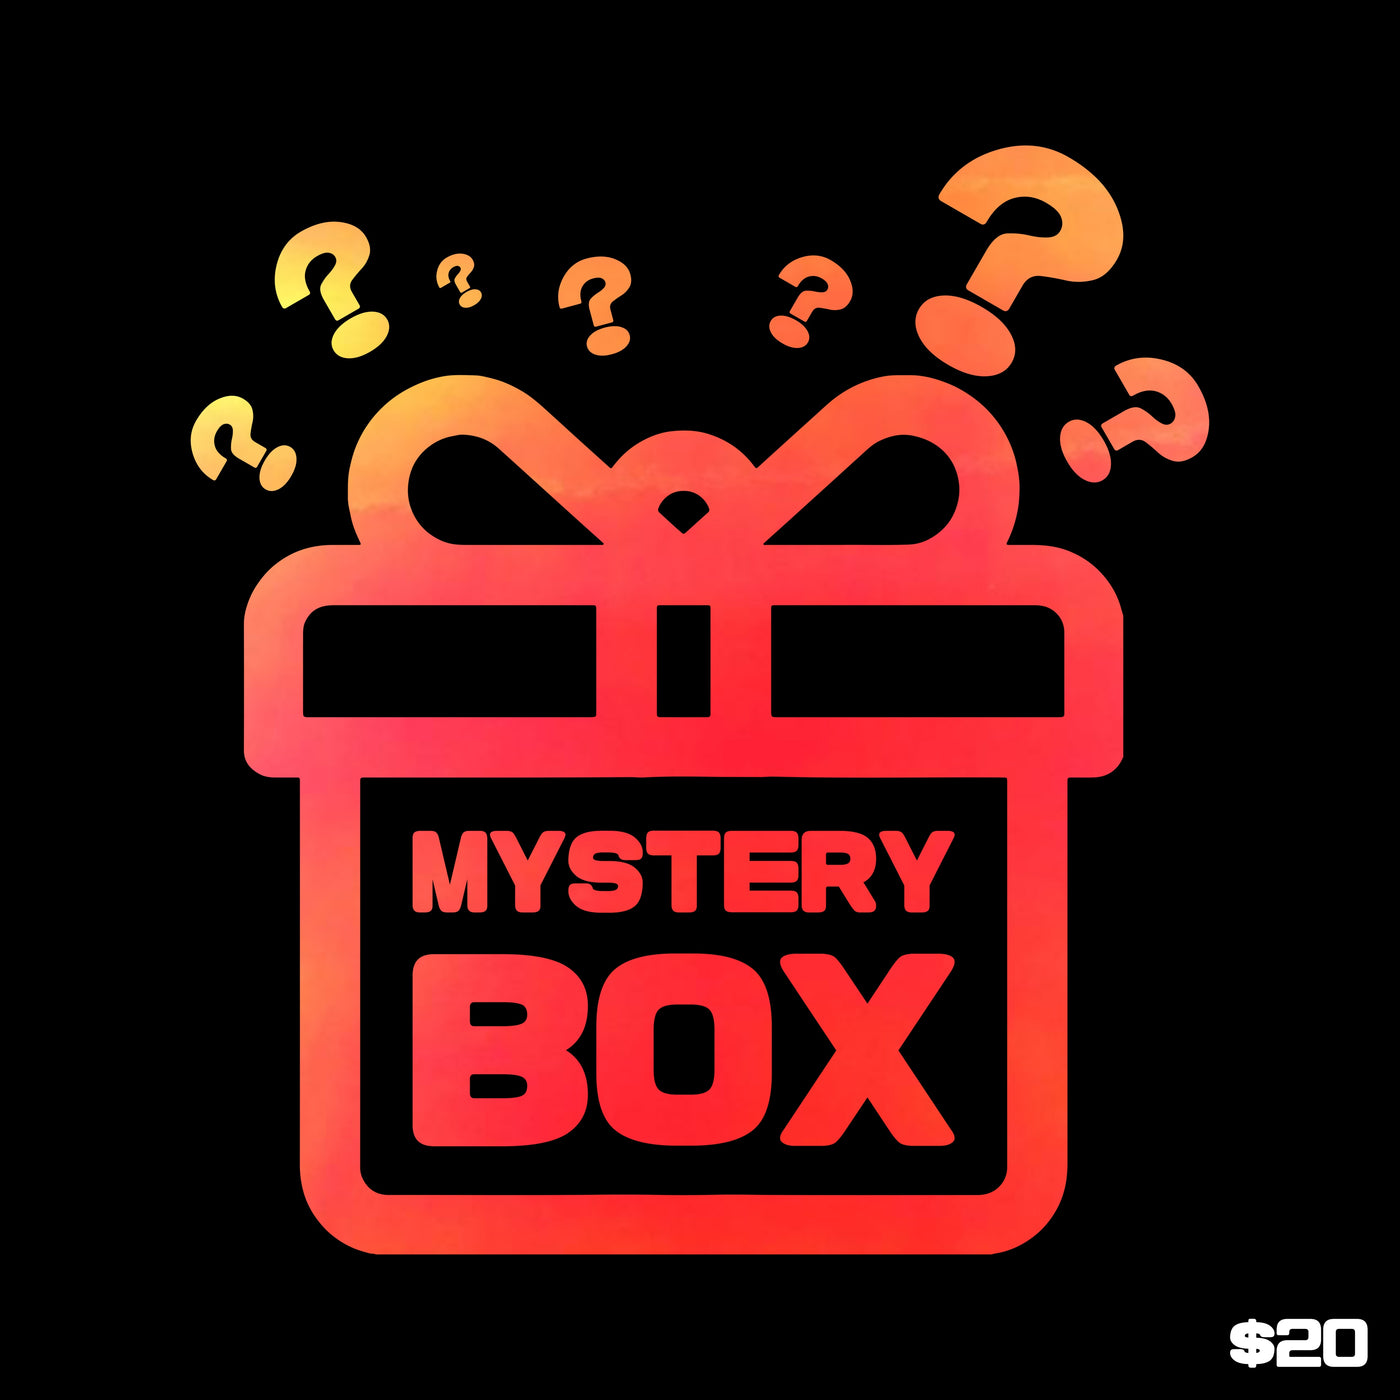 $20 "First Gen" Mystery Box